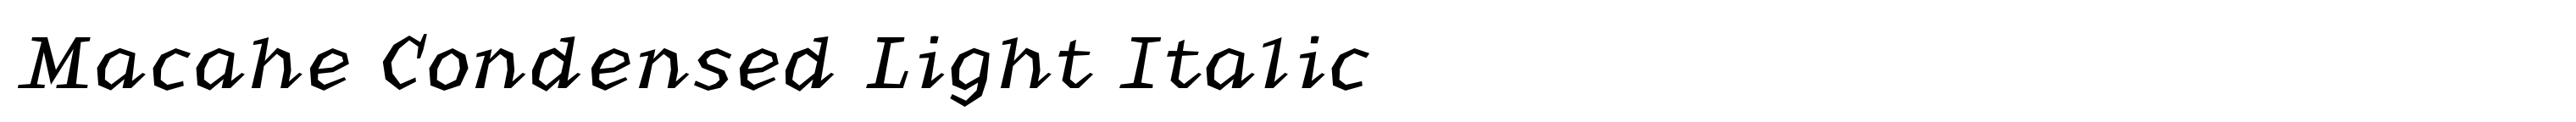 Macahe Condensed Light Italic